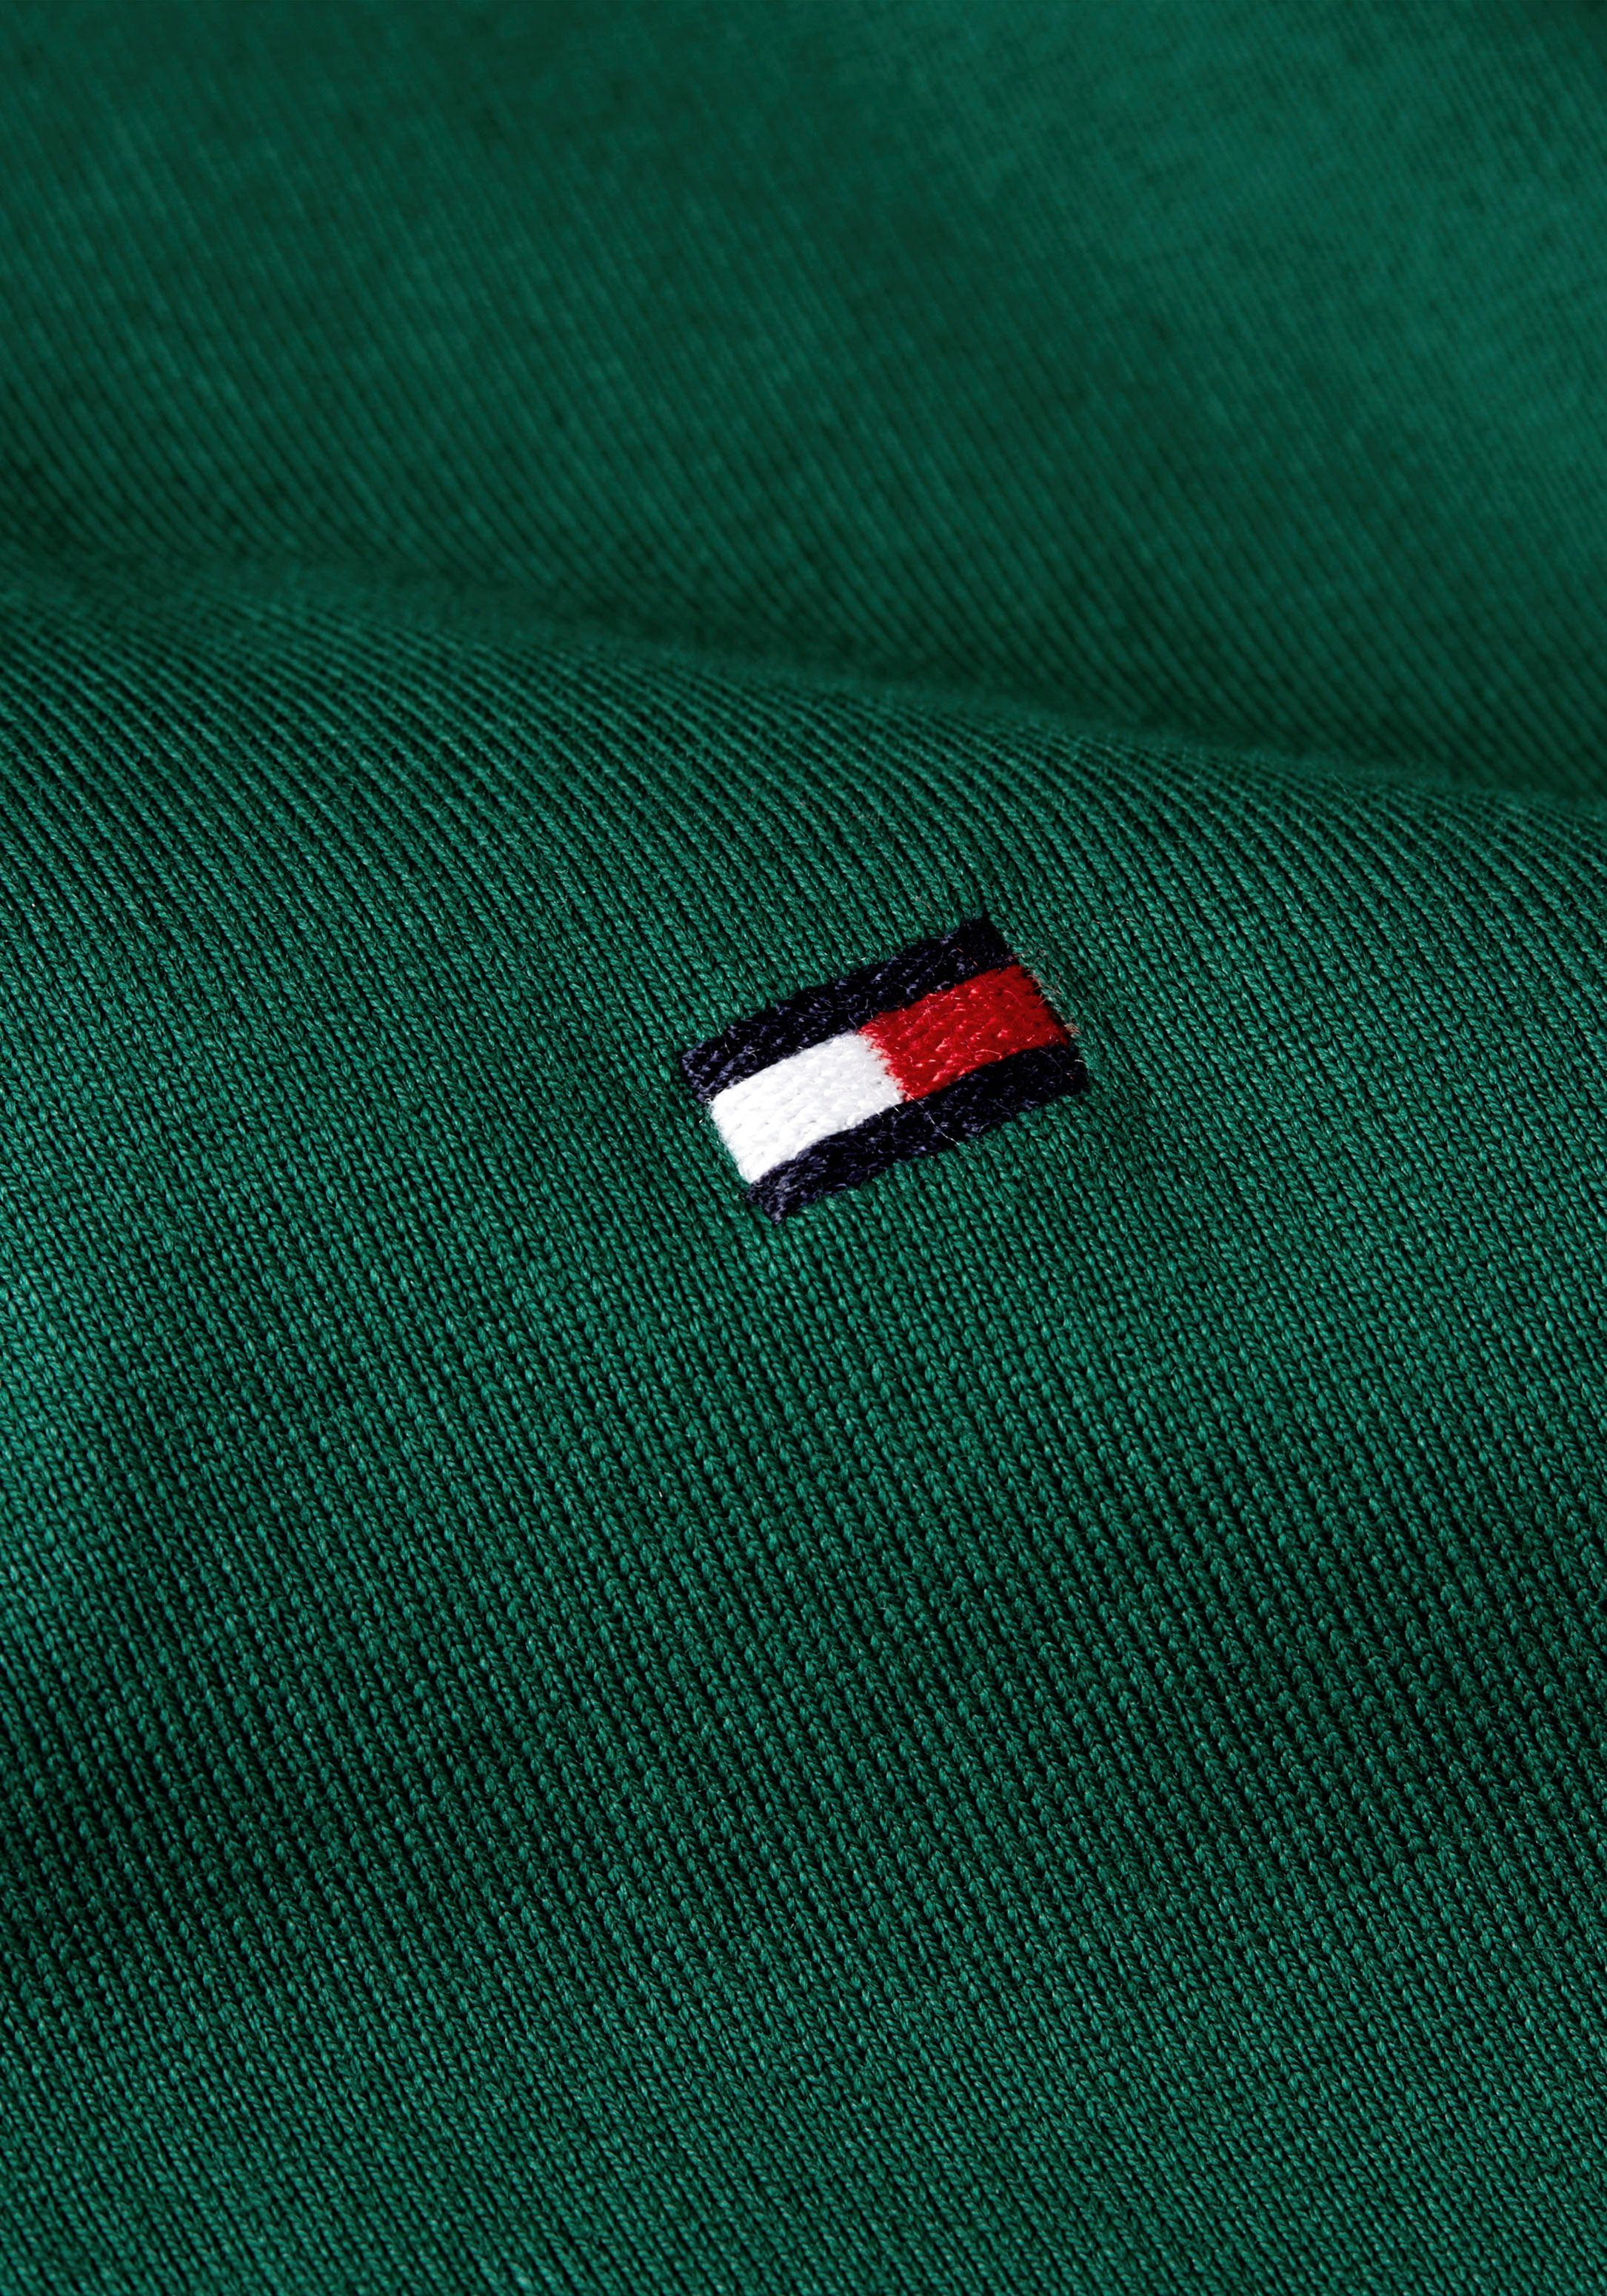 SLEEVE Rippbündchen FLAG am Tommy mit Ärmel grün LOGO FIT kontrastfarbenen Poloshirt CUFF Hilfiger SLIM